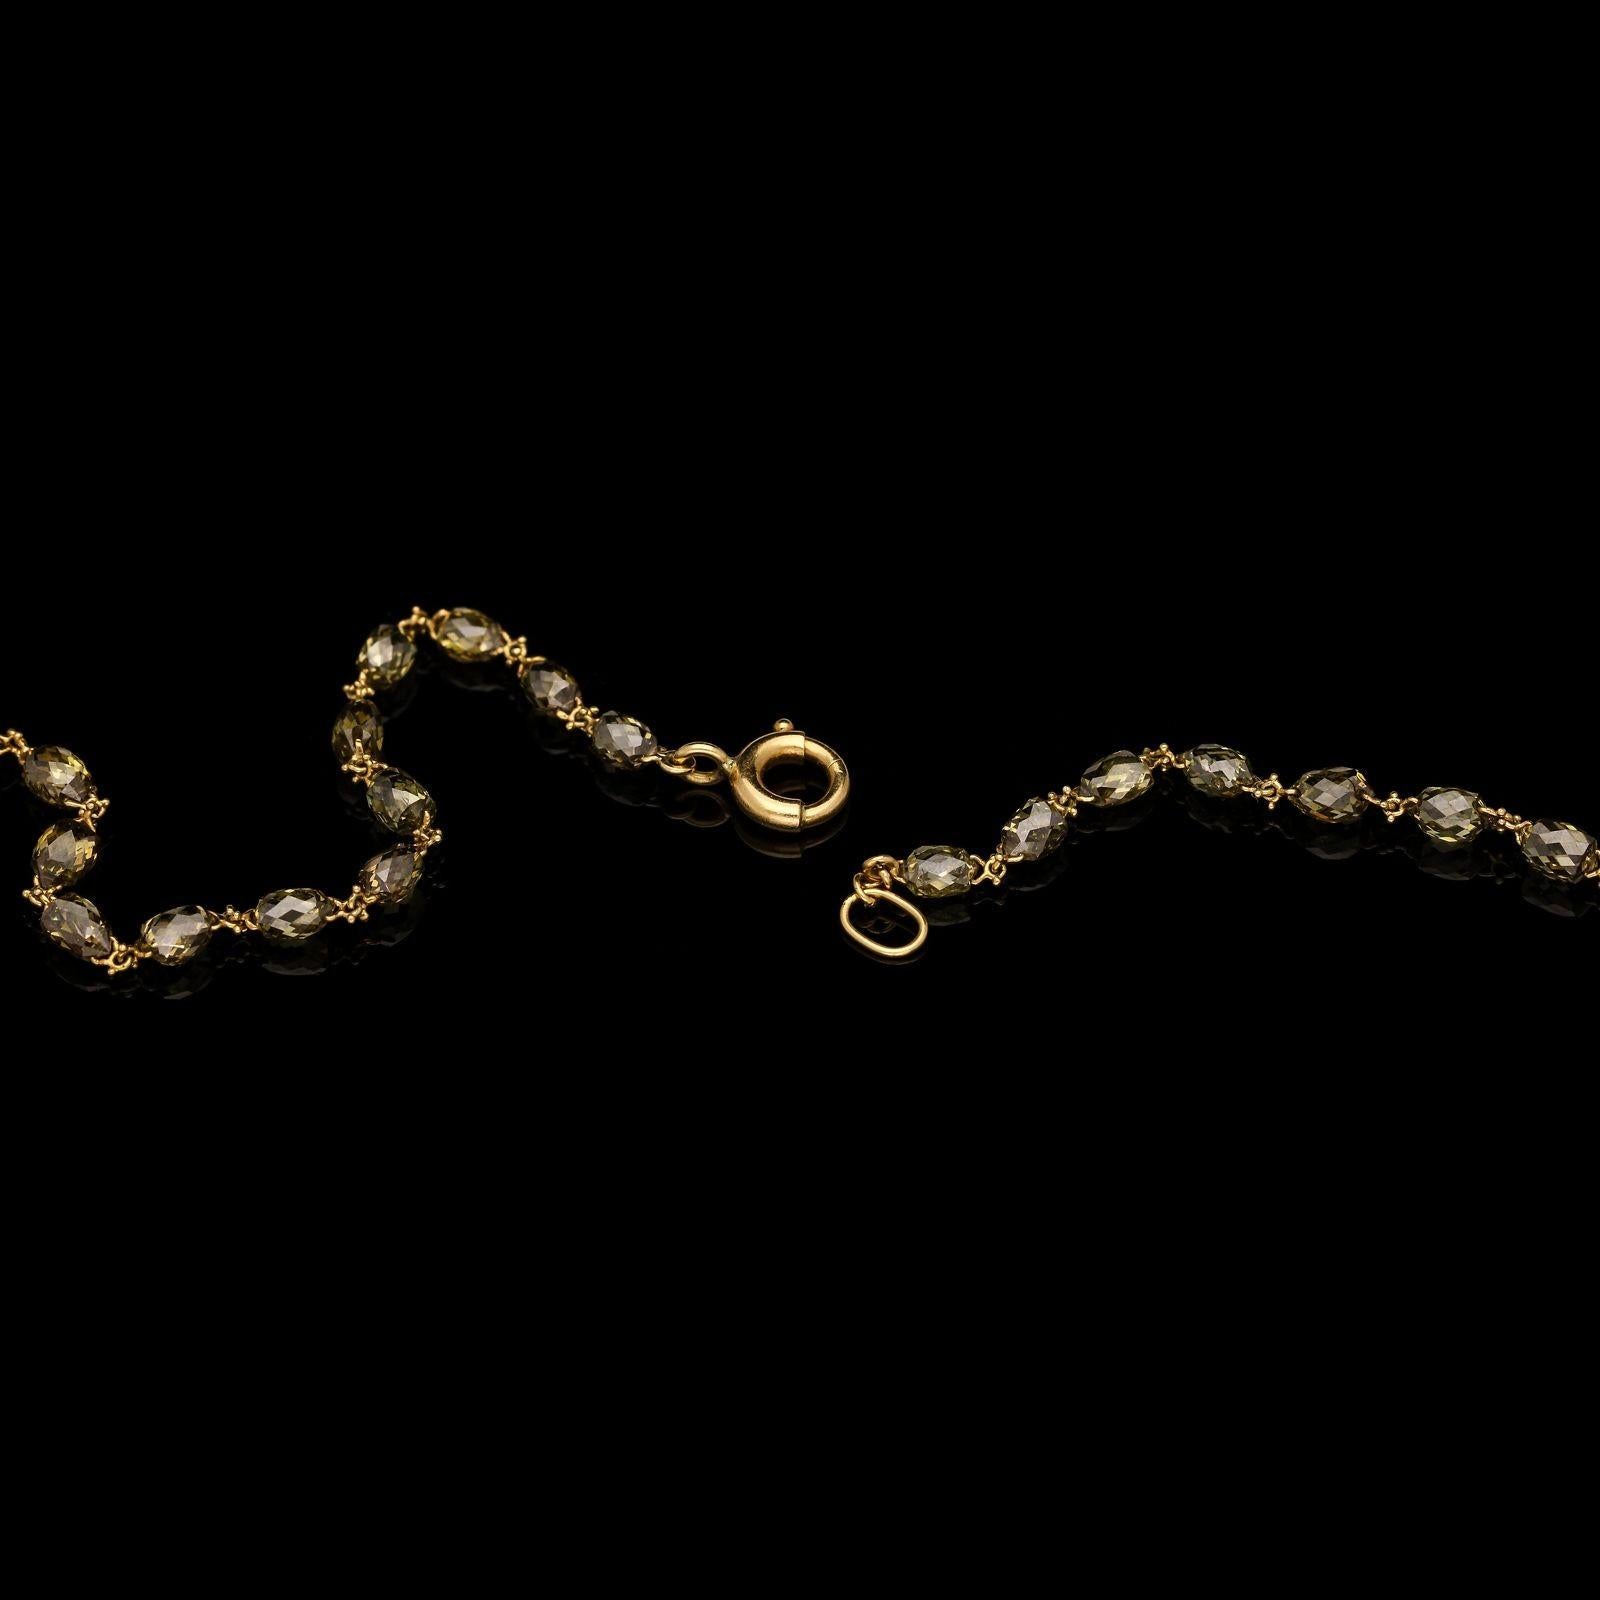 Taille briolette Hancocks Vintage Cut Briolette Diamonds and 18ct Gold Necklace Set with 16.17cts en vente